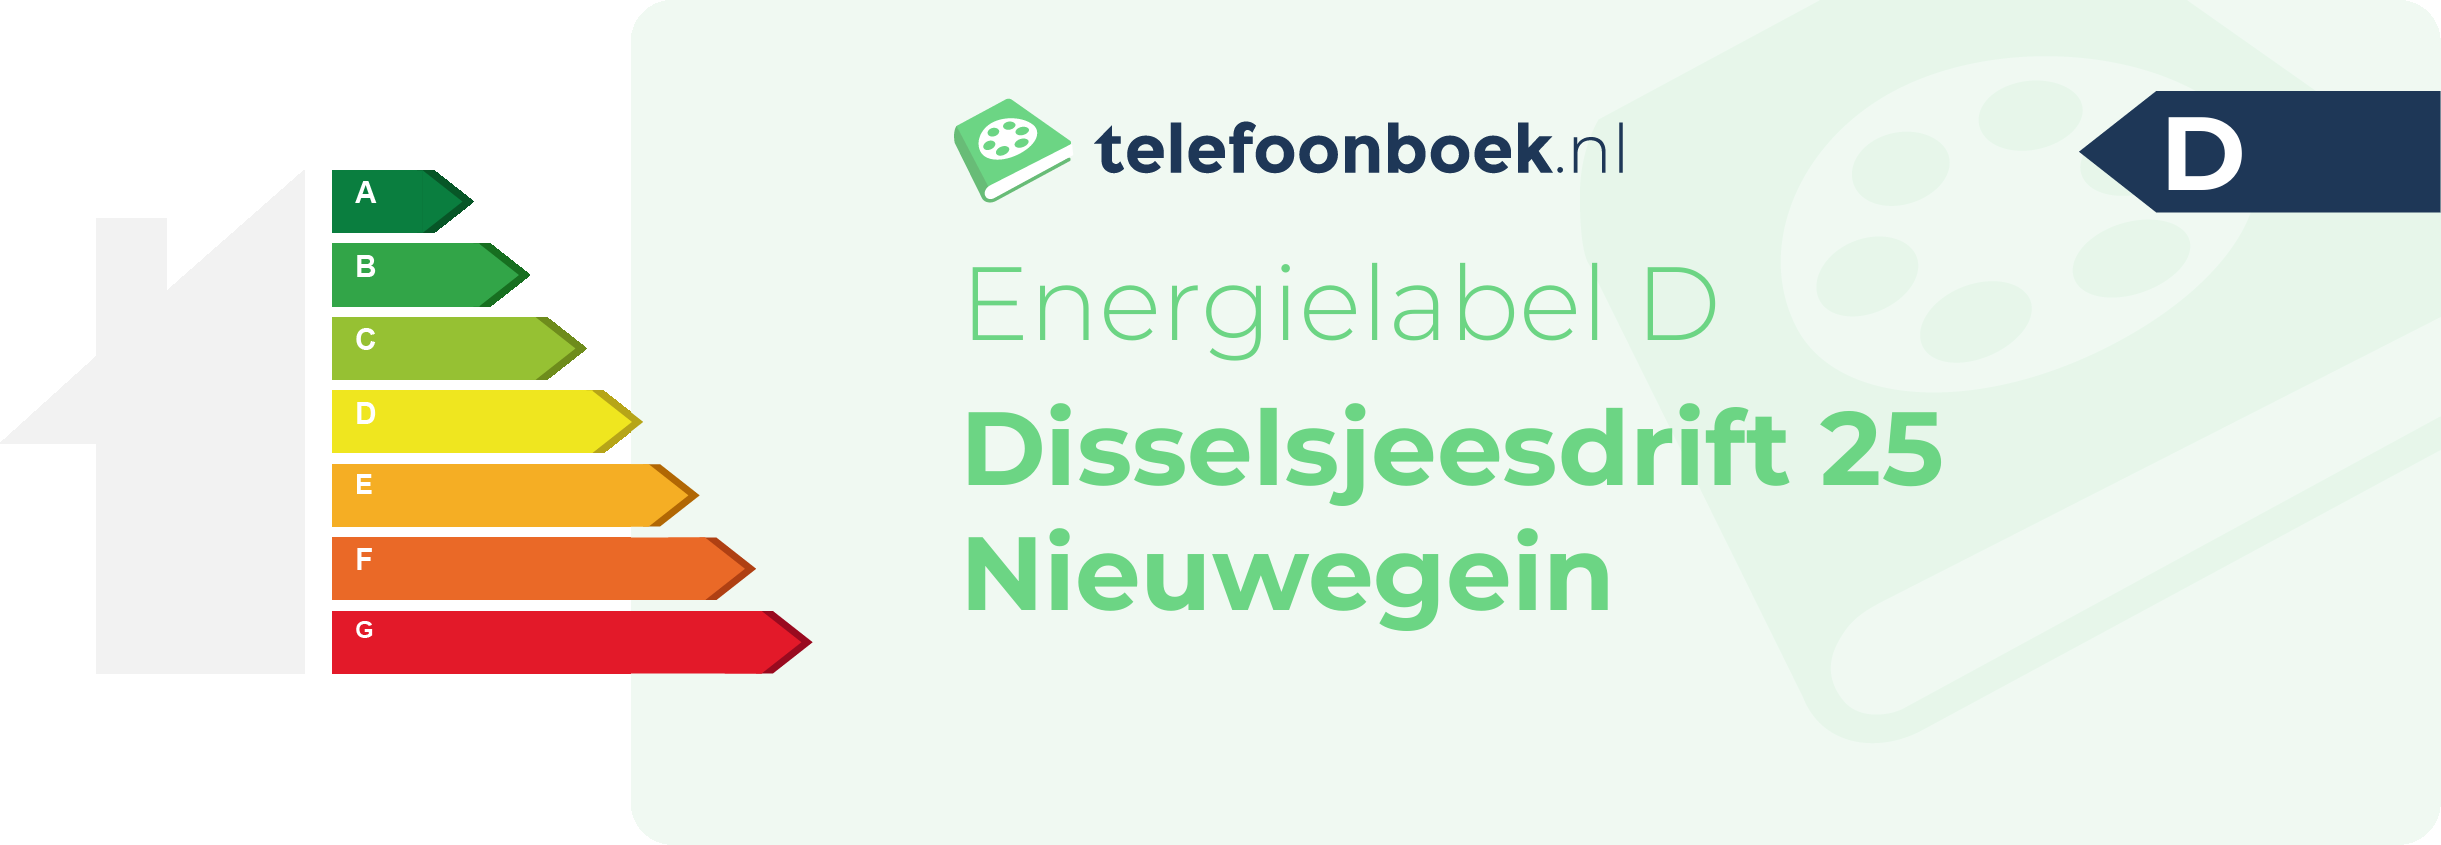 Energielabel Disselsjeesdrift 25 Nieuwegein